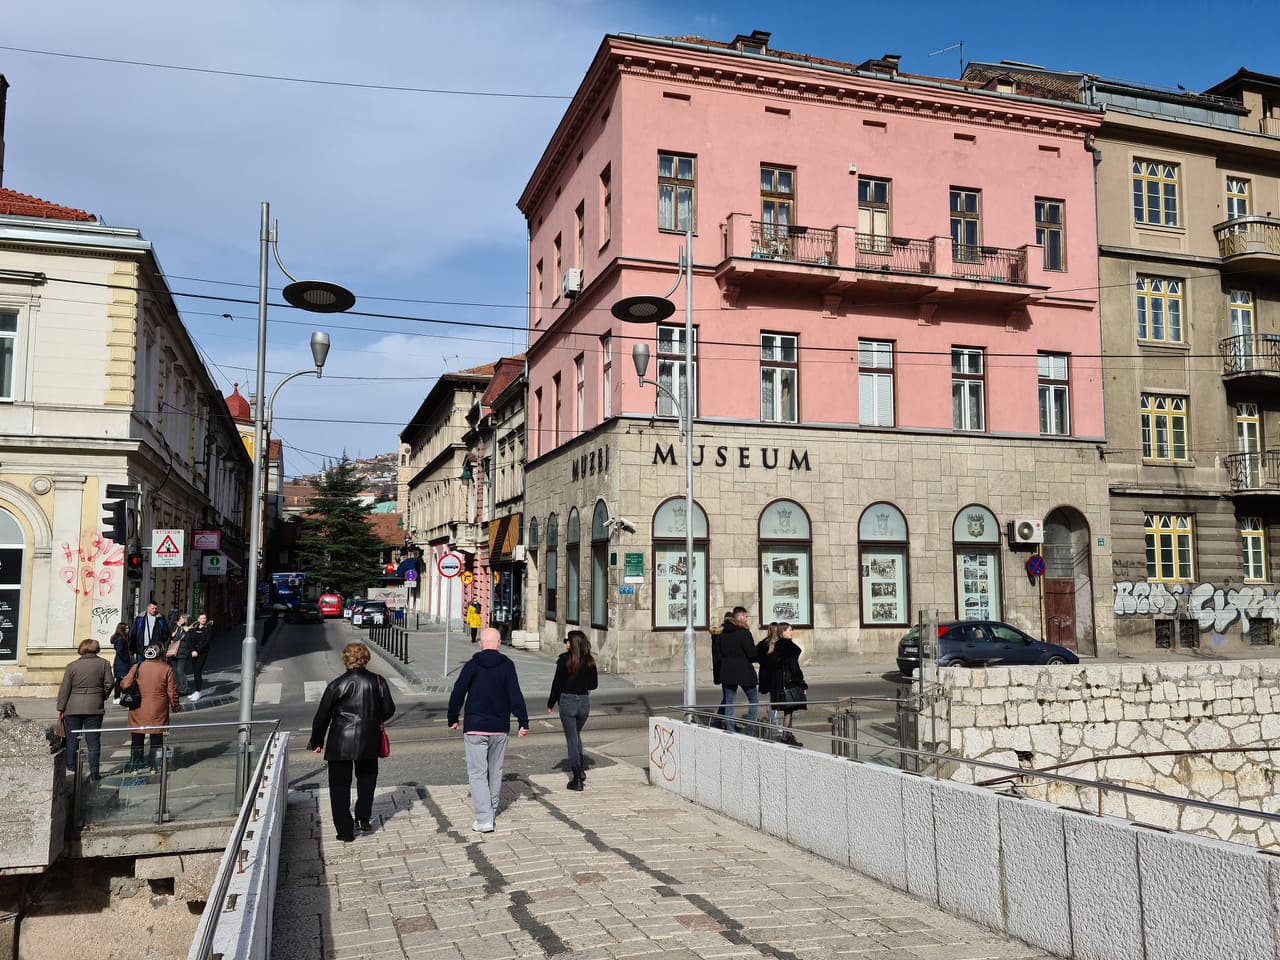  Juraj Neidhardt: Architect Who Dreamed of an Ideal Sarajevo